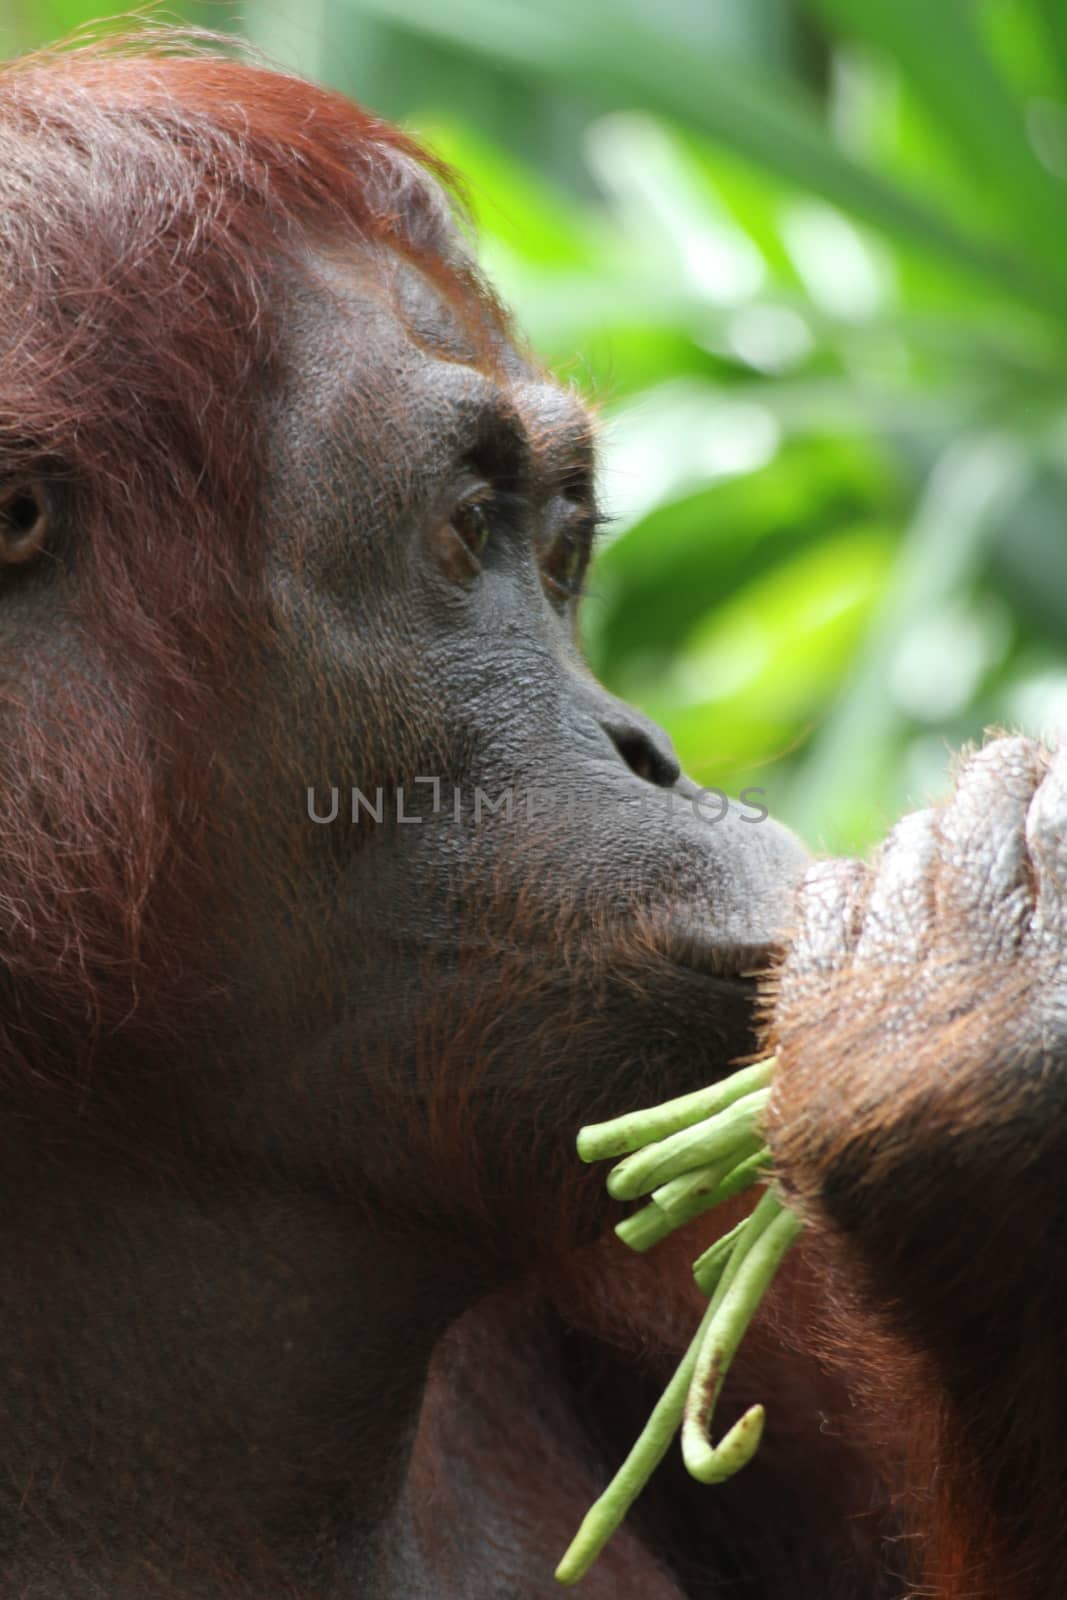 Orangutans by Kitch